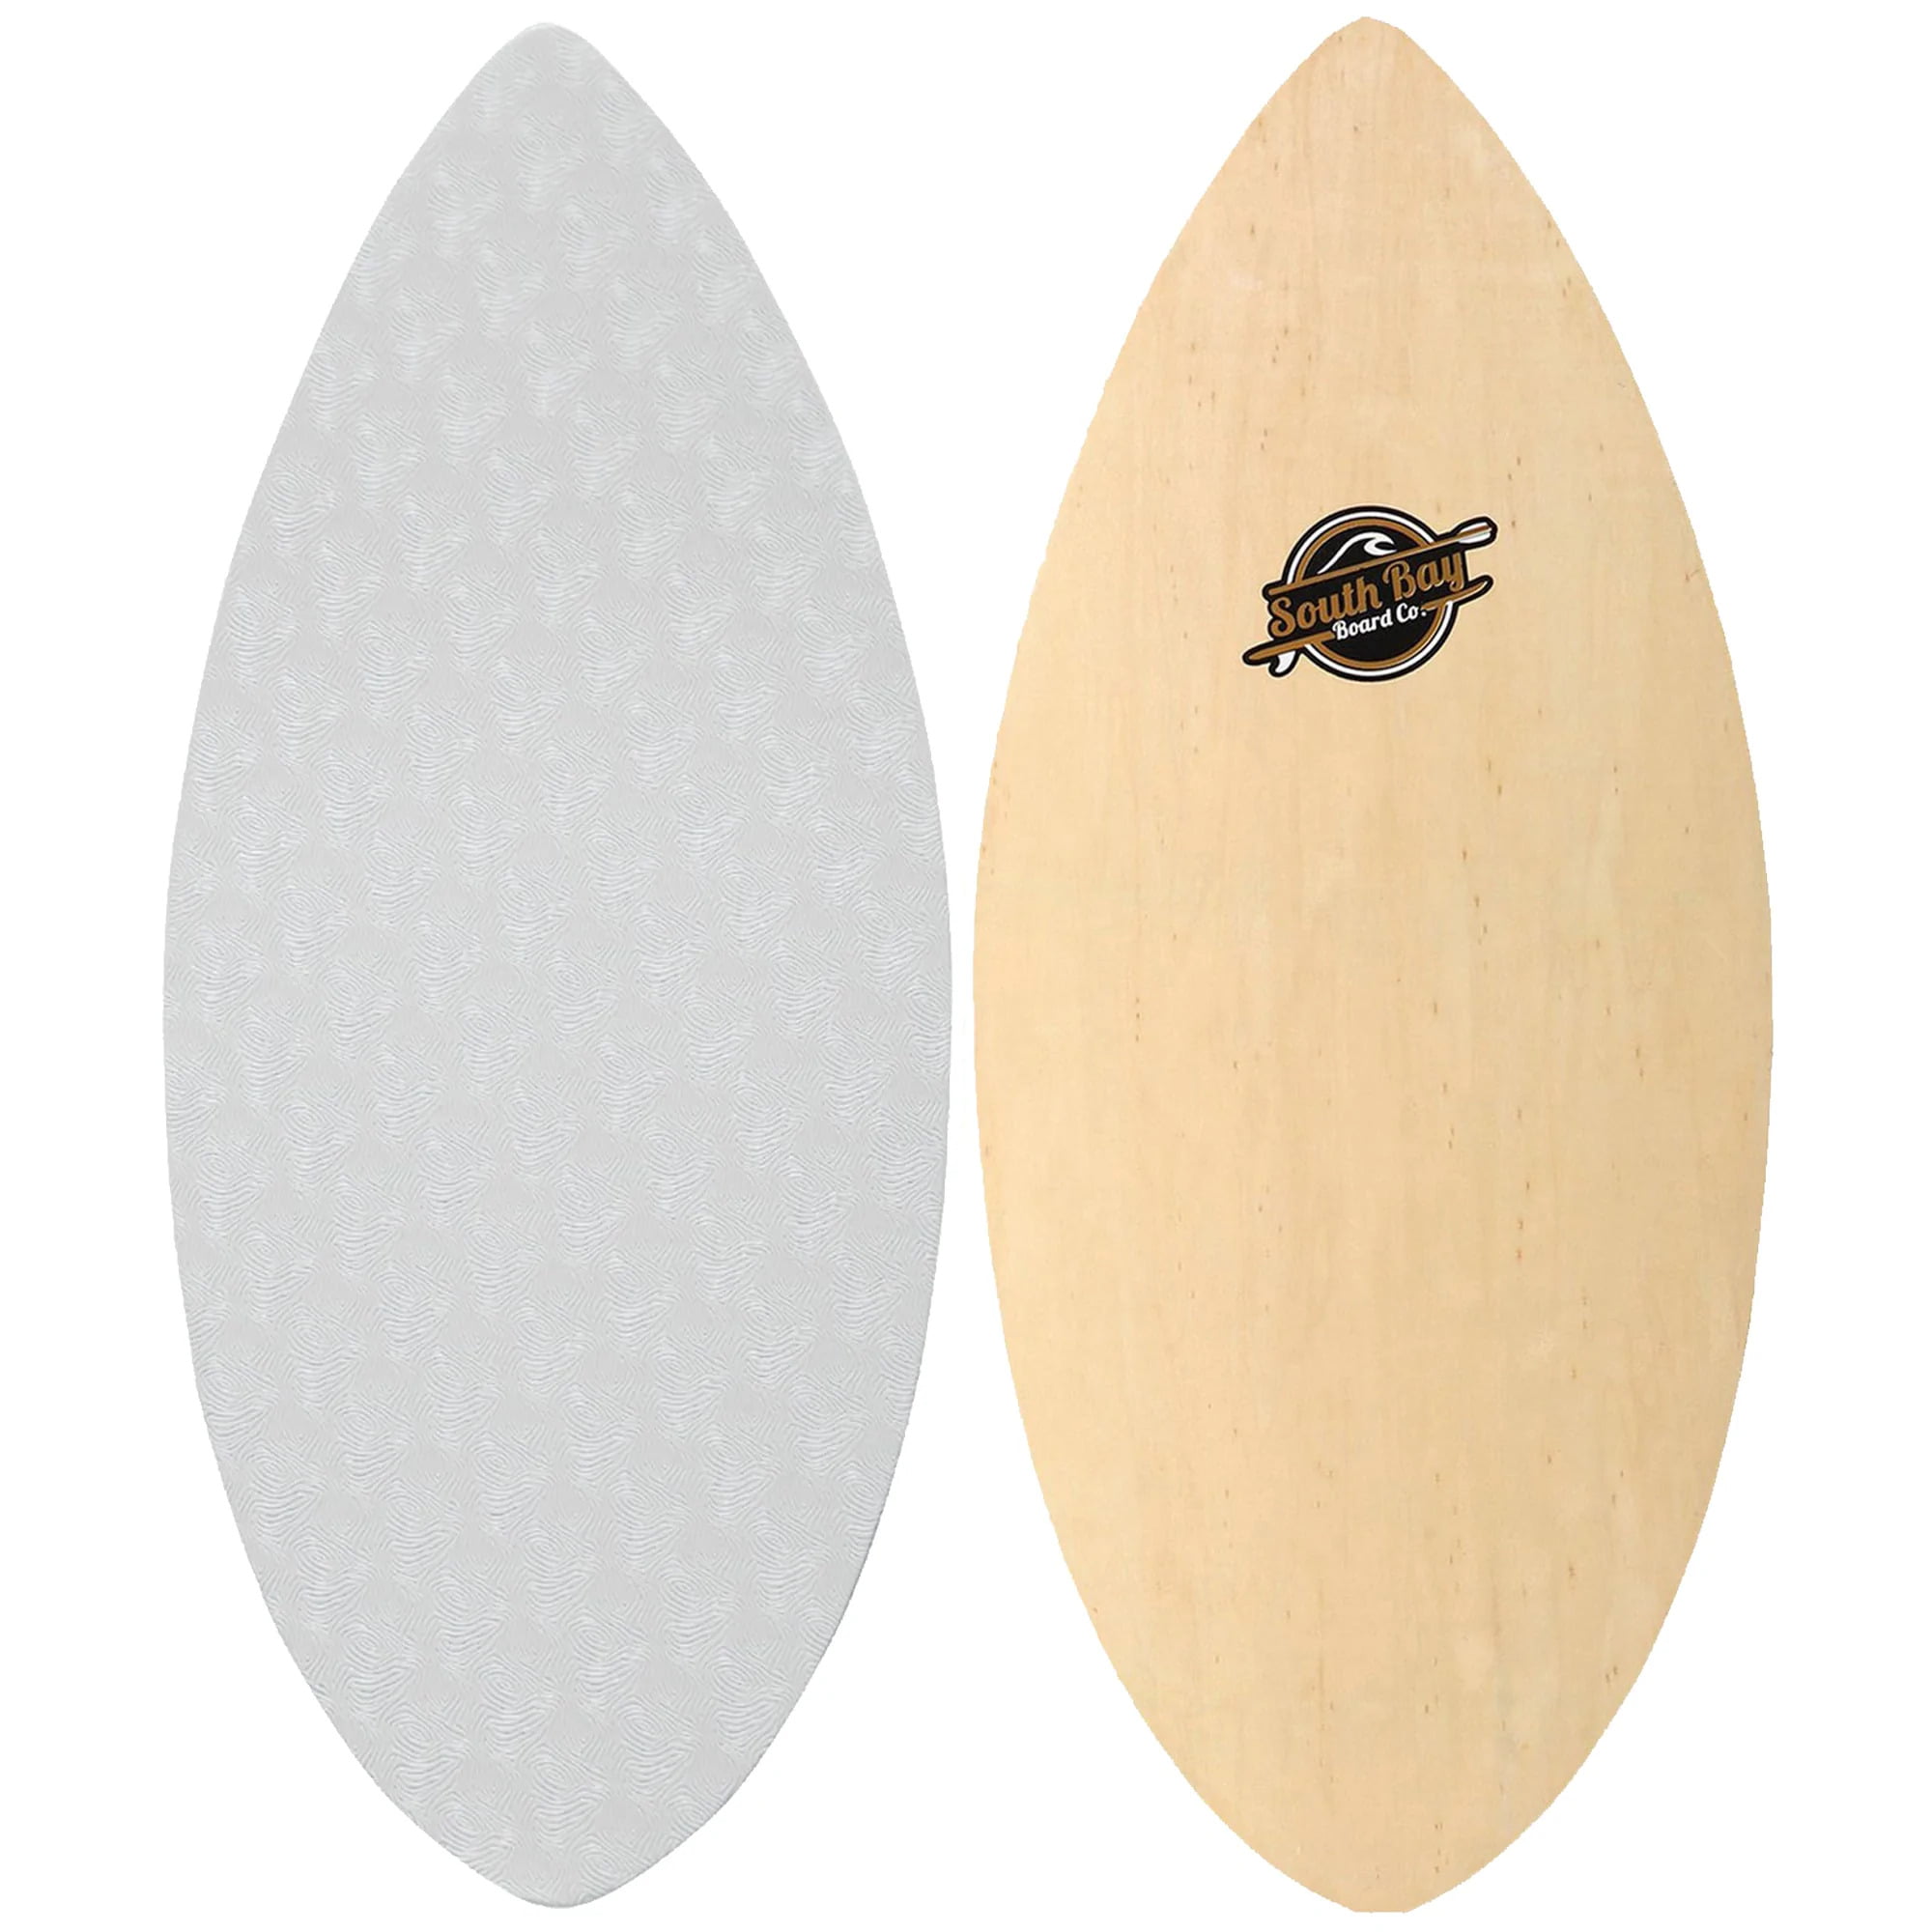 South Bay Board Co Beginners Skim Board for Kids - 41 / 36” Skipper Skimboard Durable Lightweight Wood Body with Wax-Free Textured Foam Top Deck Performance Tear Drop Shape 